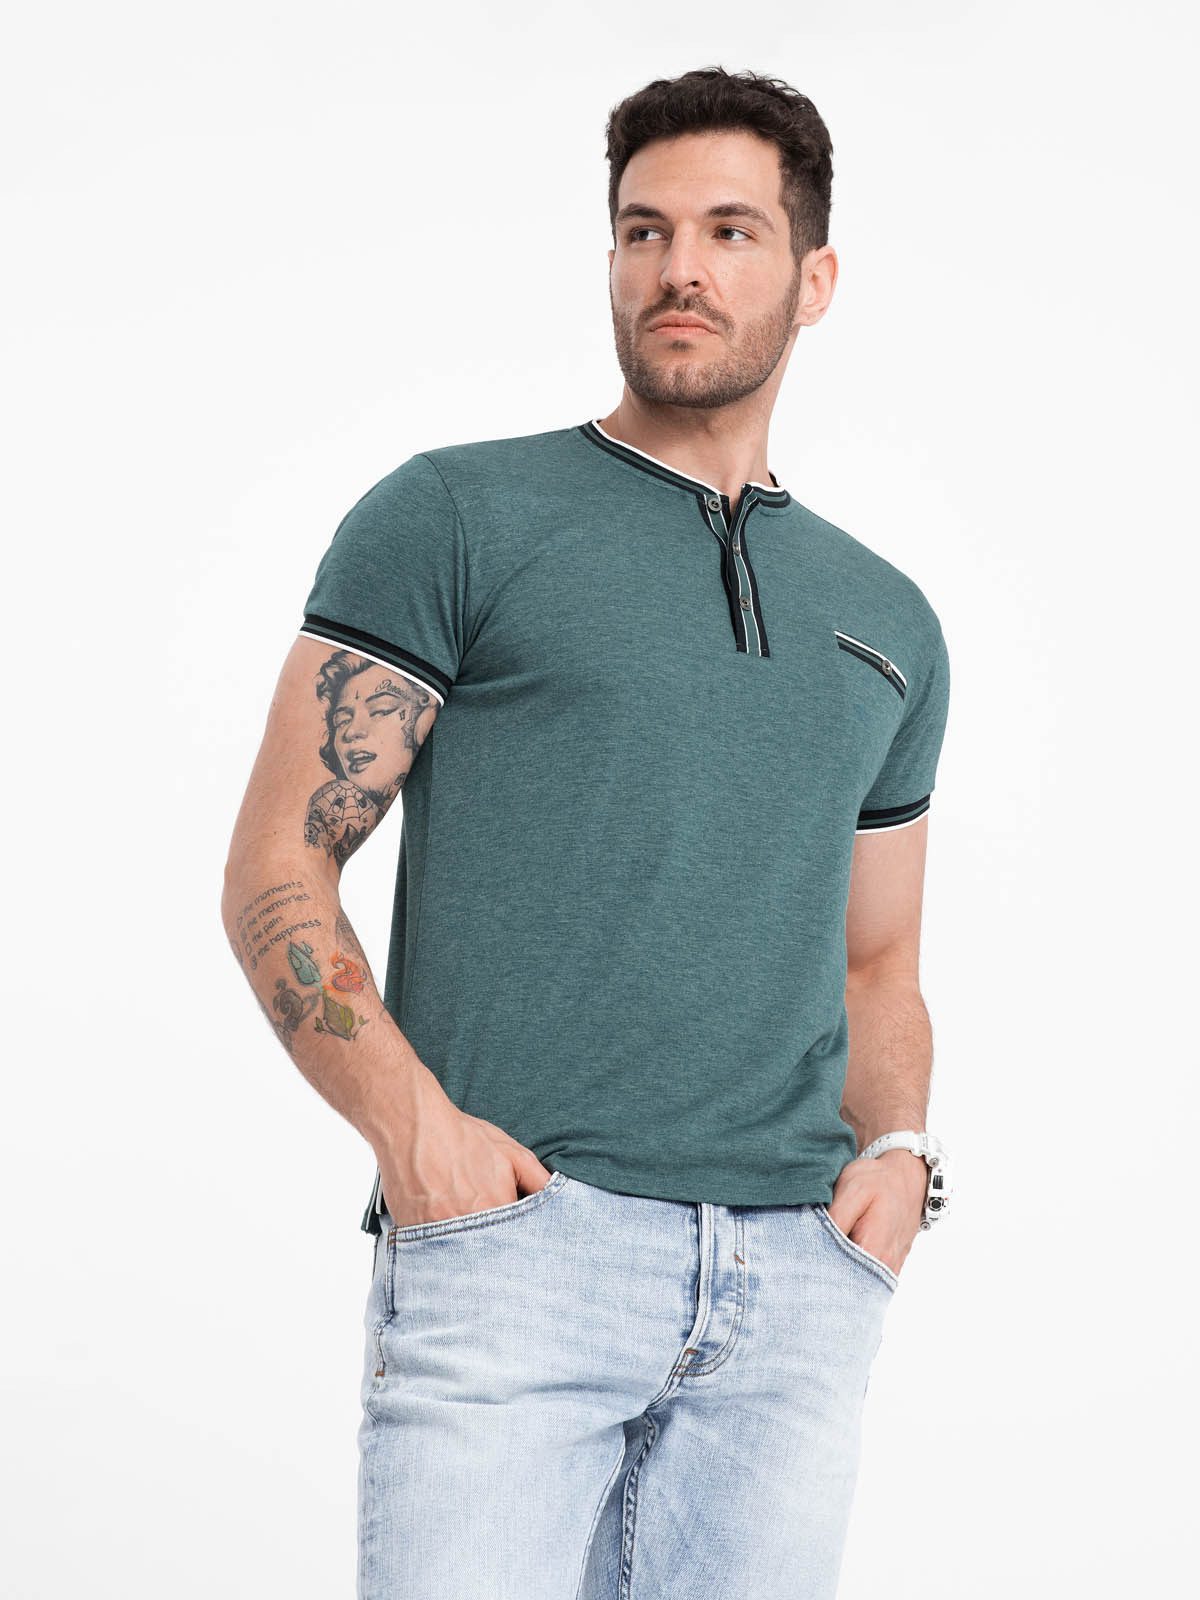 OMBRE T-Shirt Henley-T-Shirt für Männer mit dekorativen Rippenbändern